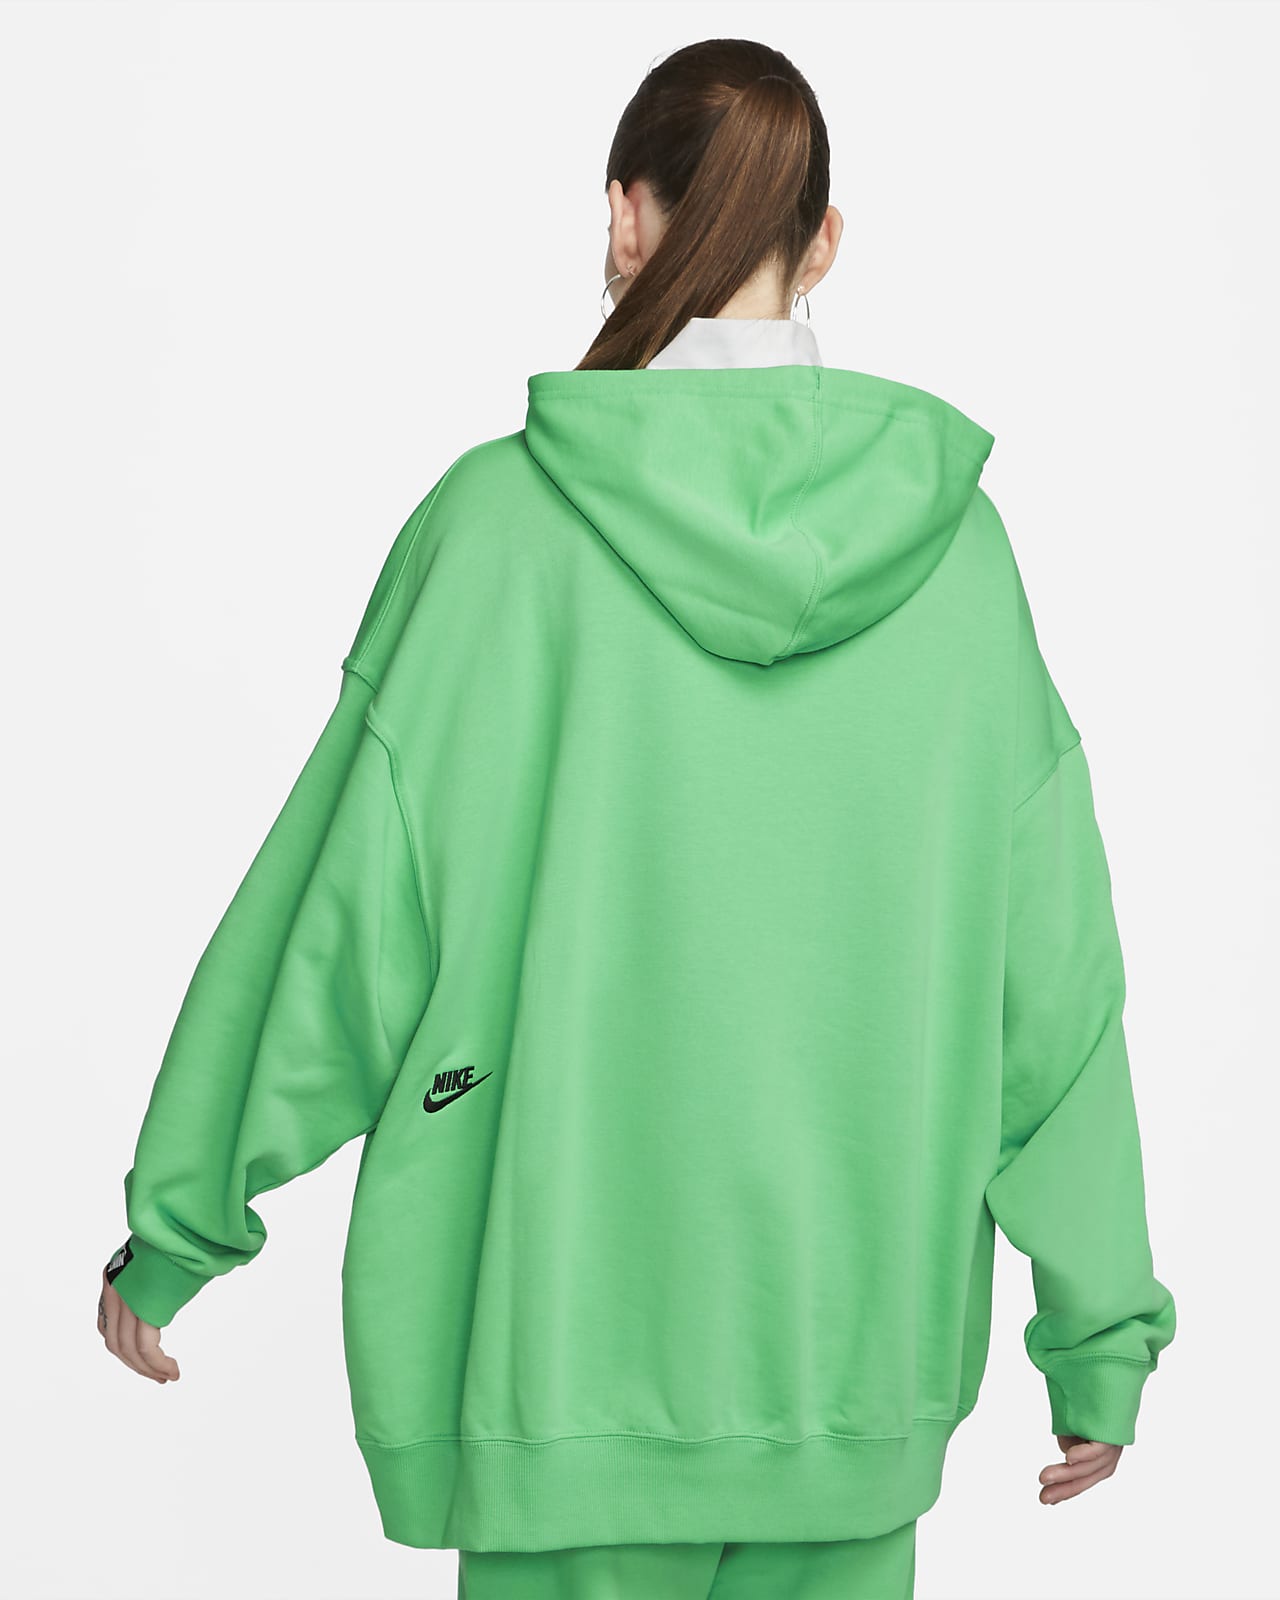 . Universiteit Beroep Nike Sportswear Oversized hoodie voor dames. Nike BE